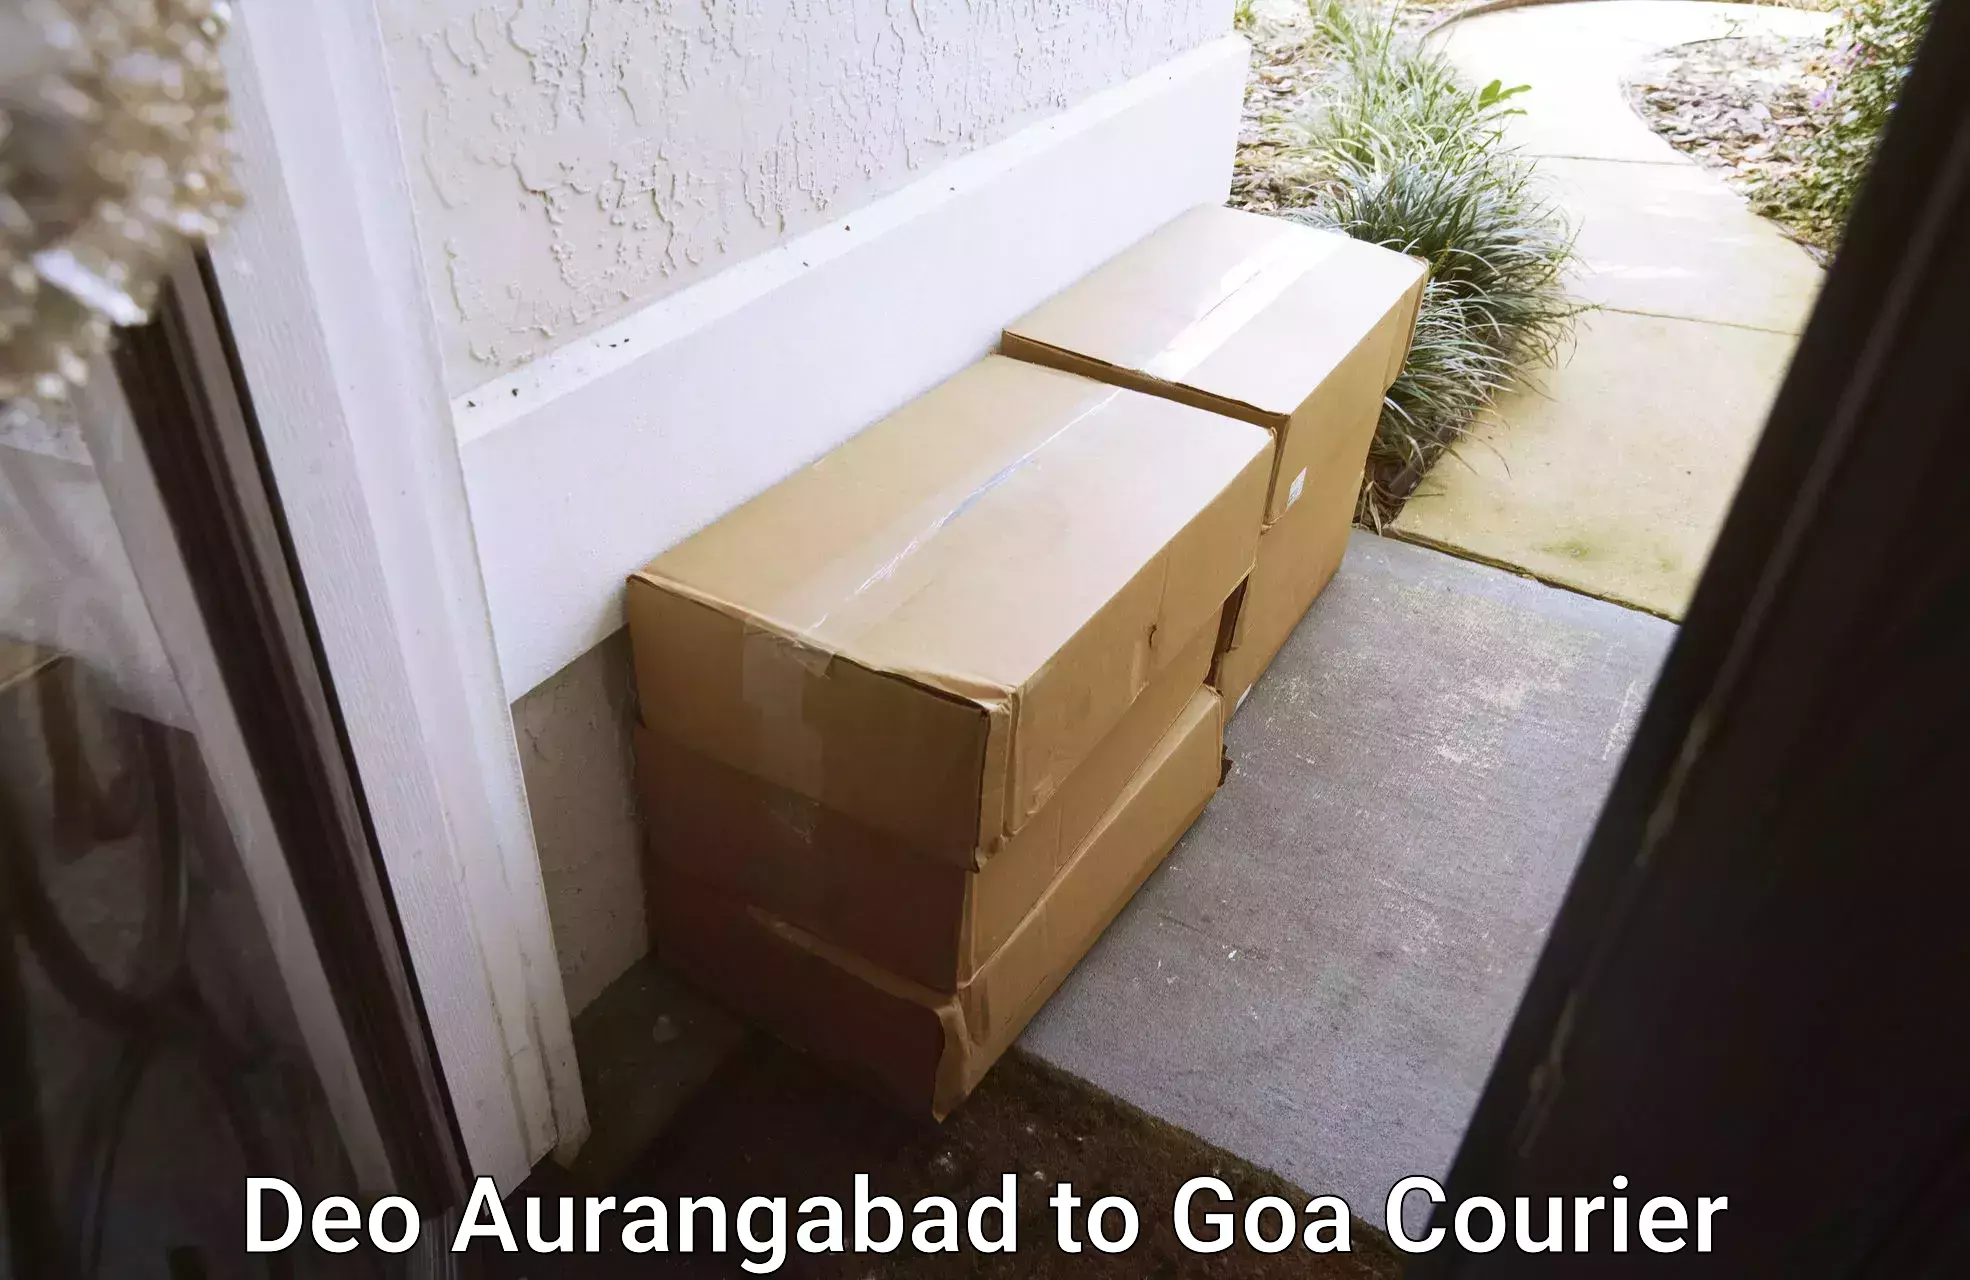 Door-to-door relocation services Deo Aurangabad to South Goa